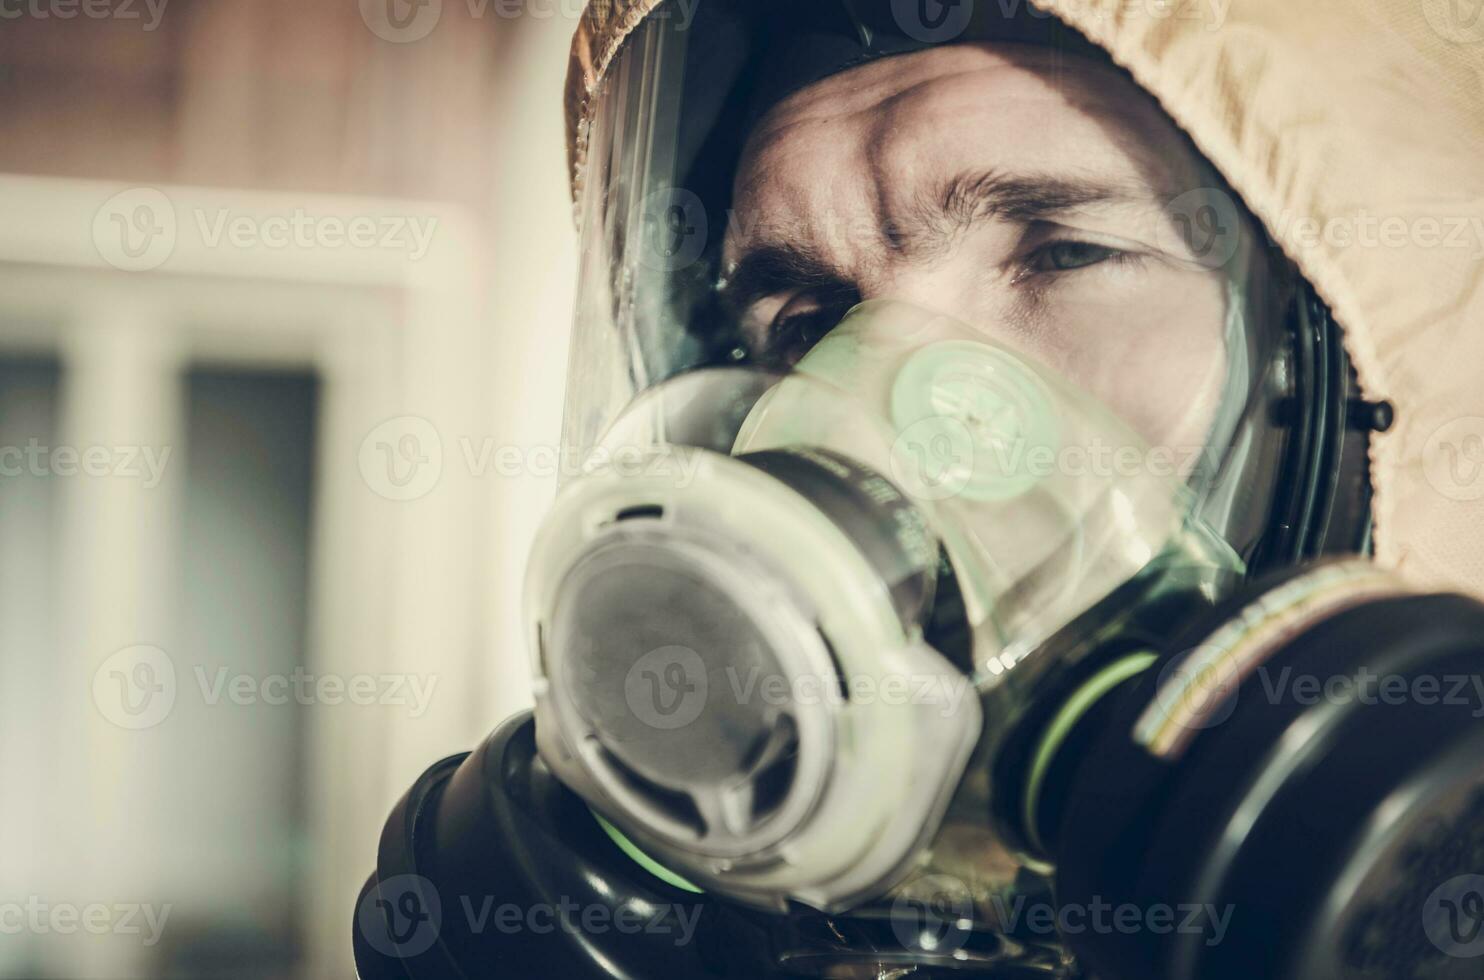 moe mannen in veiligheid biohazard masker aan het bedekken zijn gezicht foto